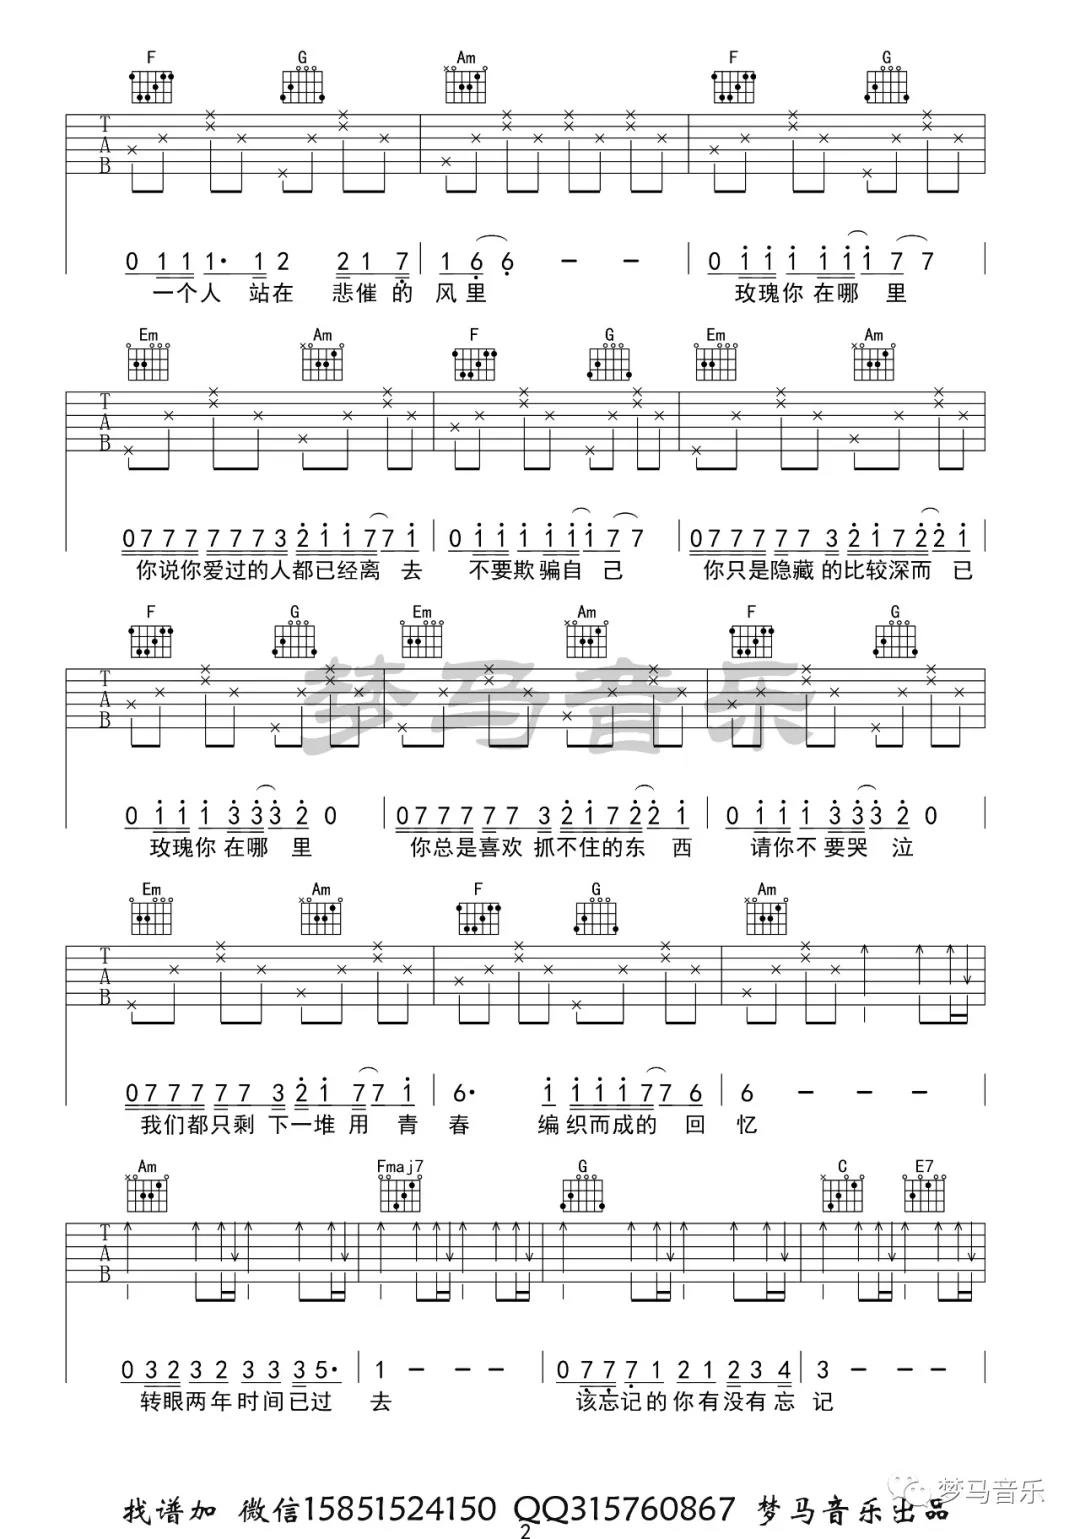 夏祯阳《玫瑰》吉他谱(C调)-Guitar Music Score